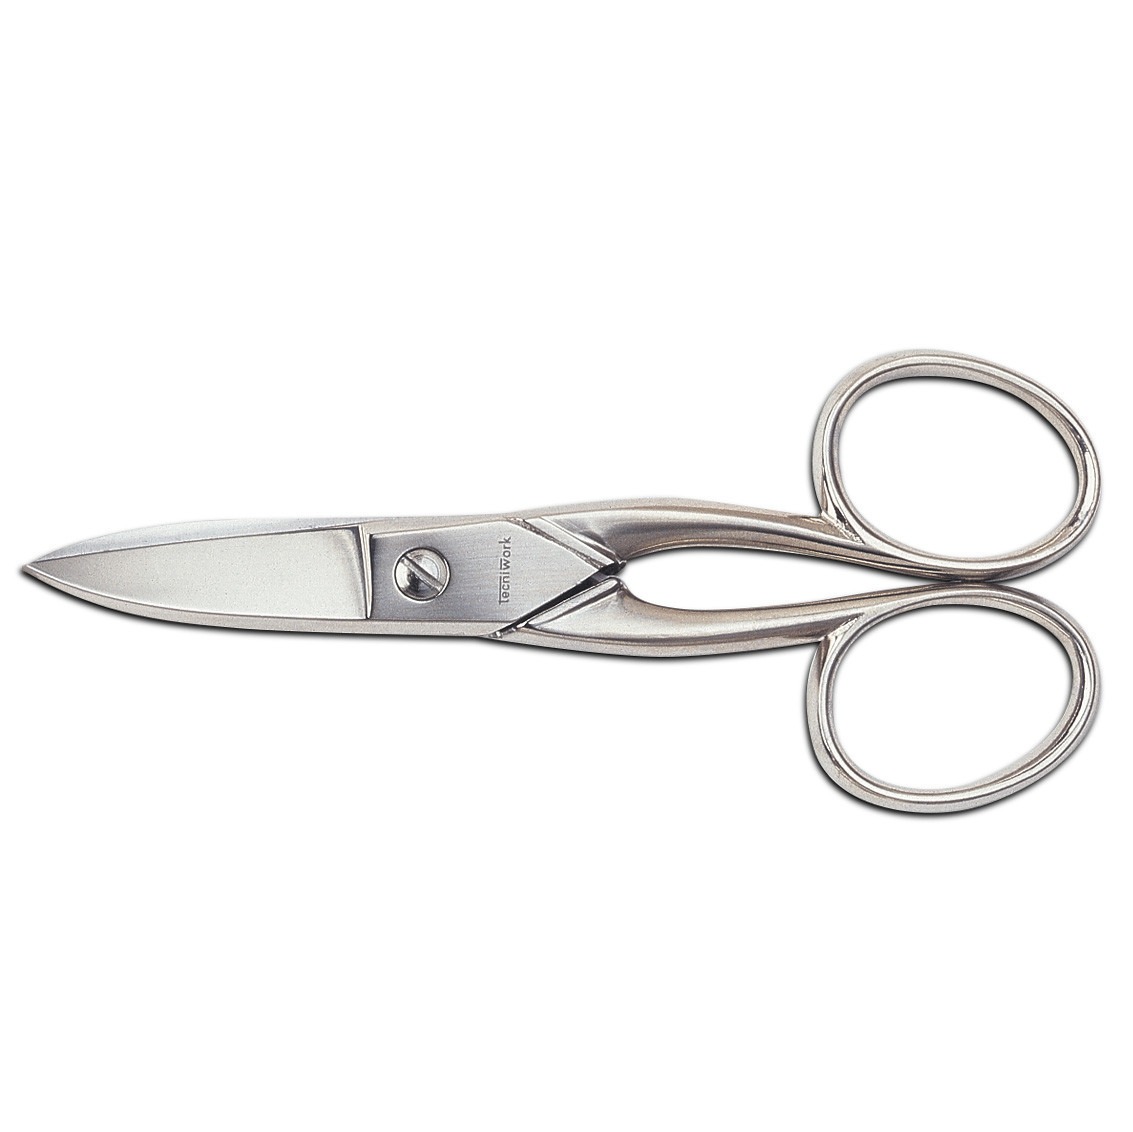 Professional multipurpose scissors Curved cut 11.5 cm